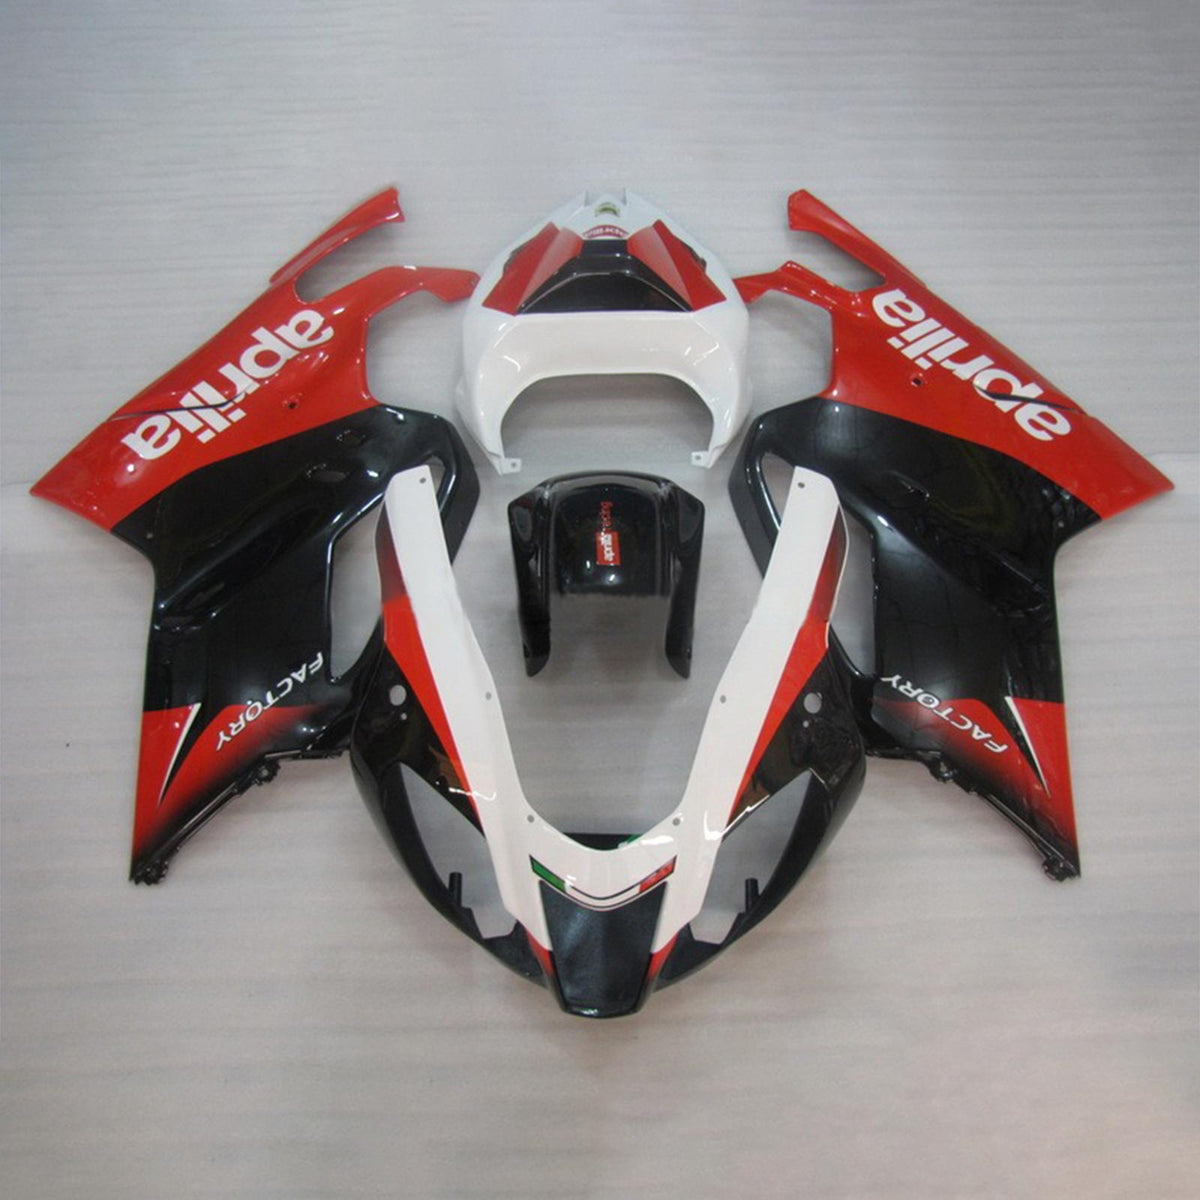 Amotopart 2003–2006 Aprilias RSV1000 rot-schwarzes Verkleidungsset